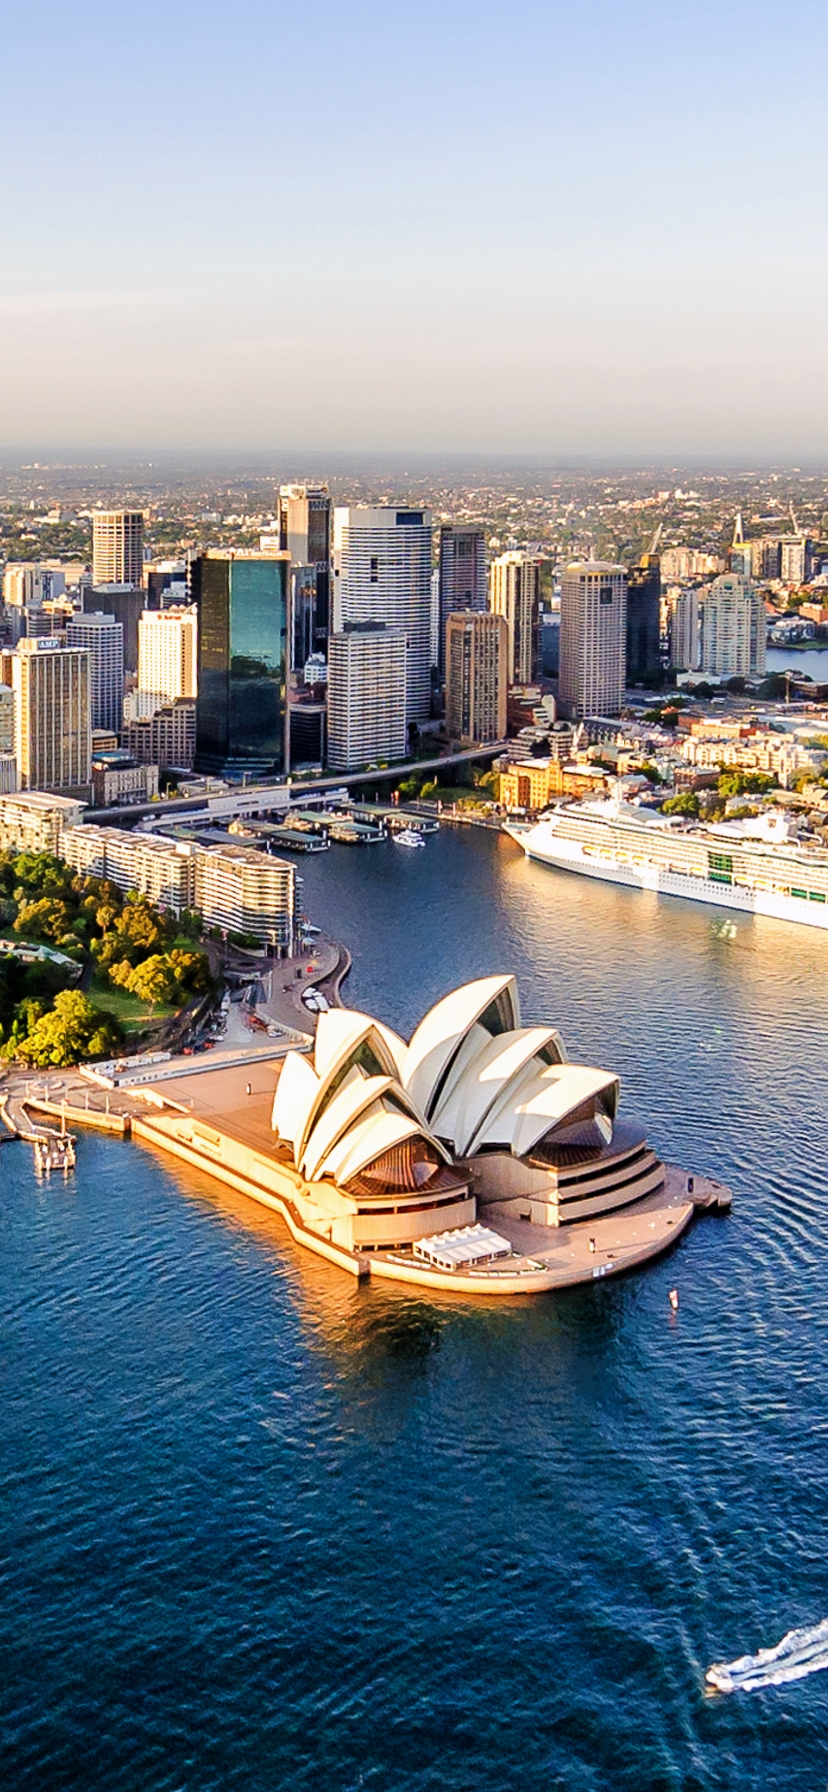 Картинка: Город, Сидней, Sydney, Австралия, здания, высотки, театр, вода, паром, набережная, панорама, горизонт